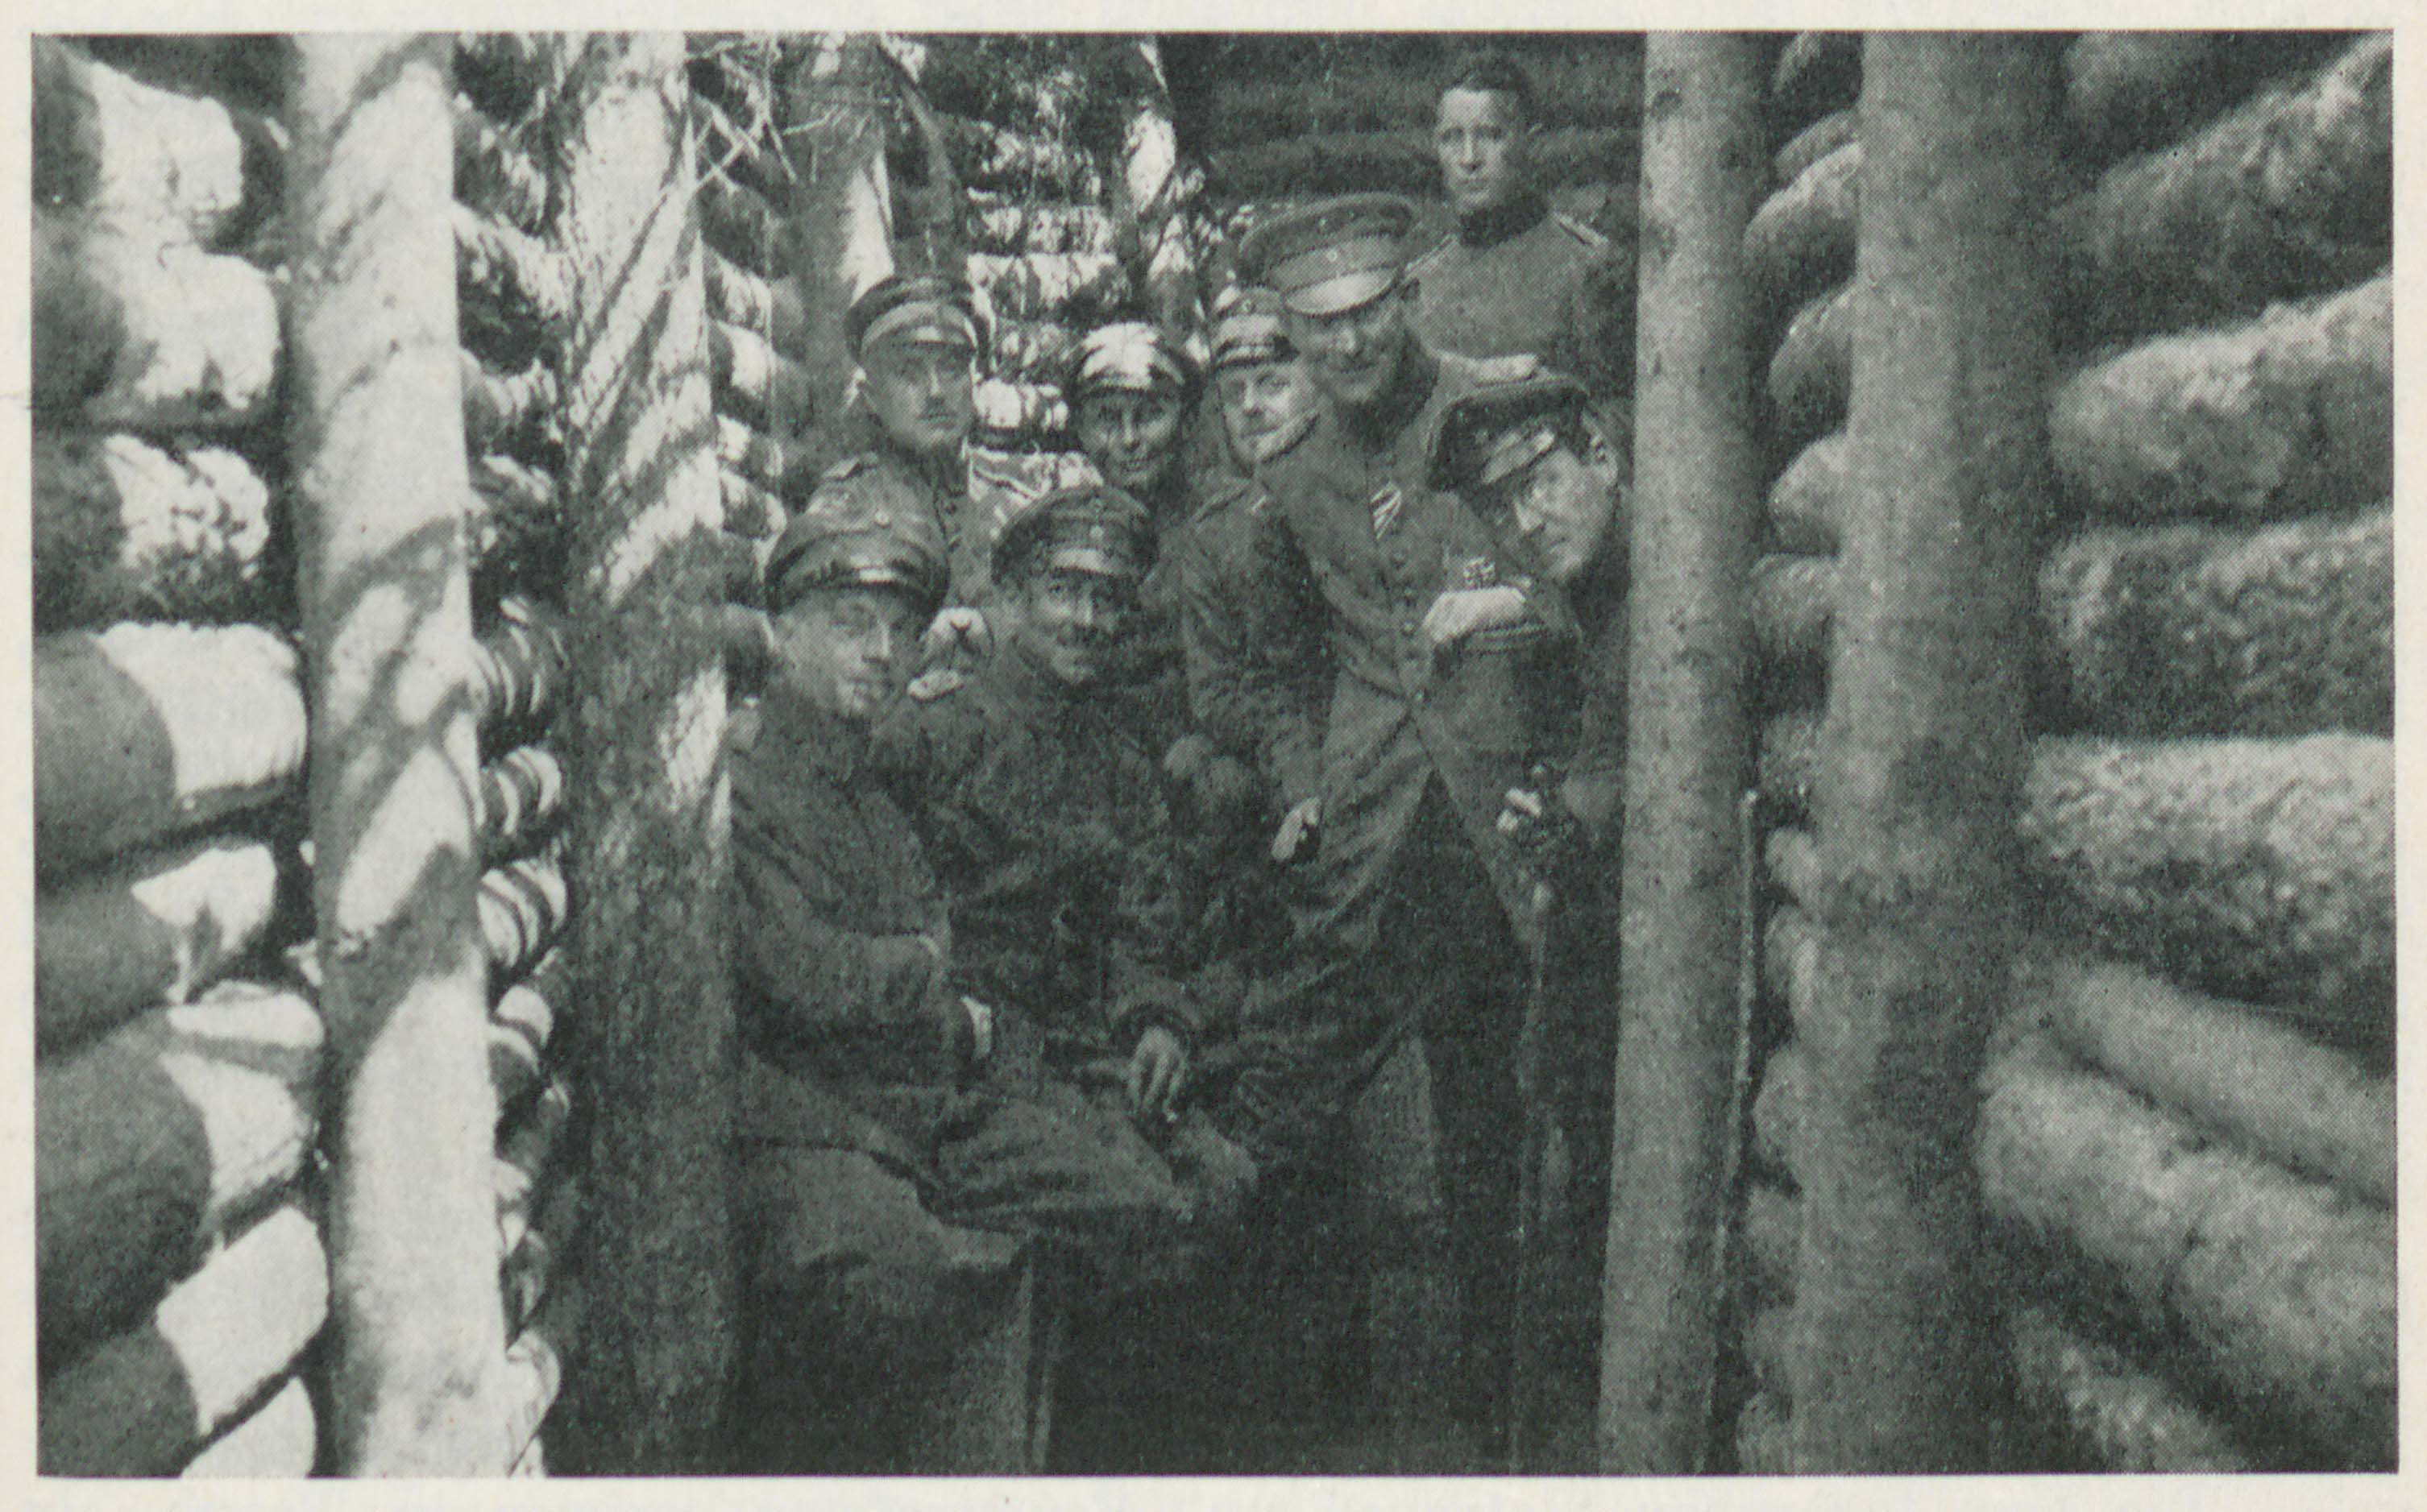  Vor dem Regimentsgefechtsstand am Winterberg-Tunnel (Foto aus RG, GLAK Cr 651, S. 321)